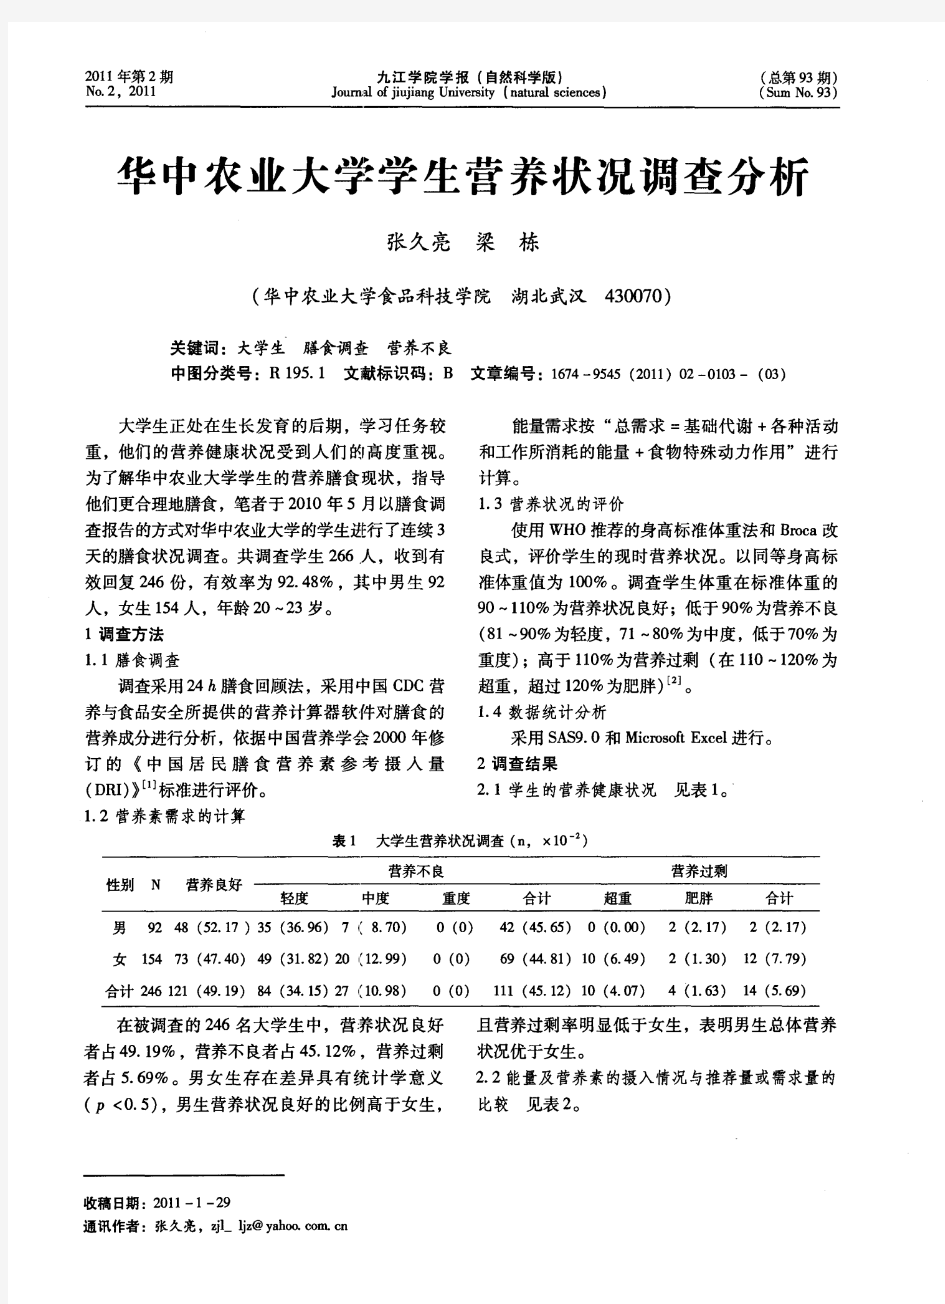 华中农业大学学生营养状况调查分析